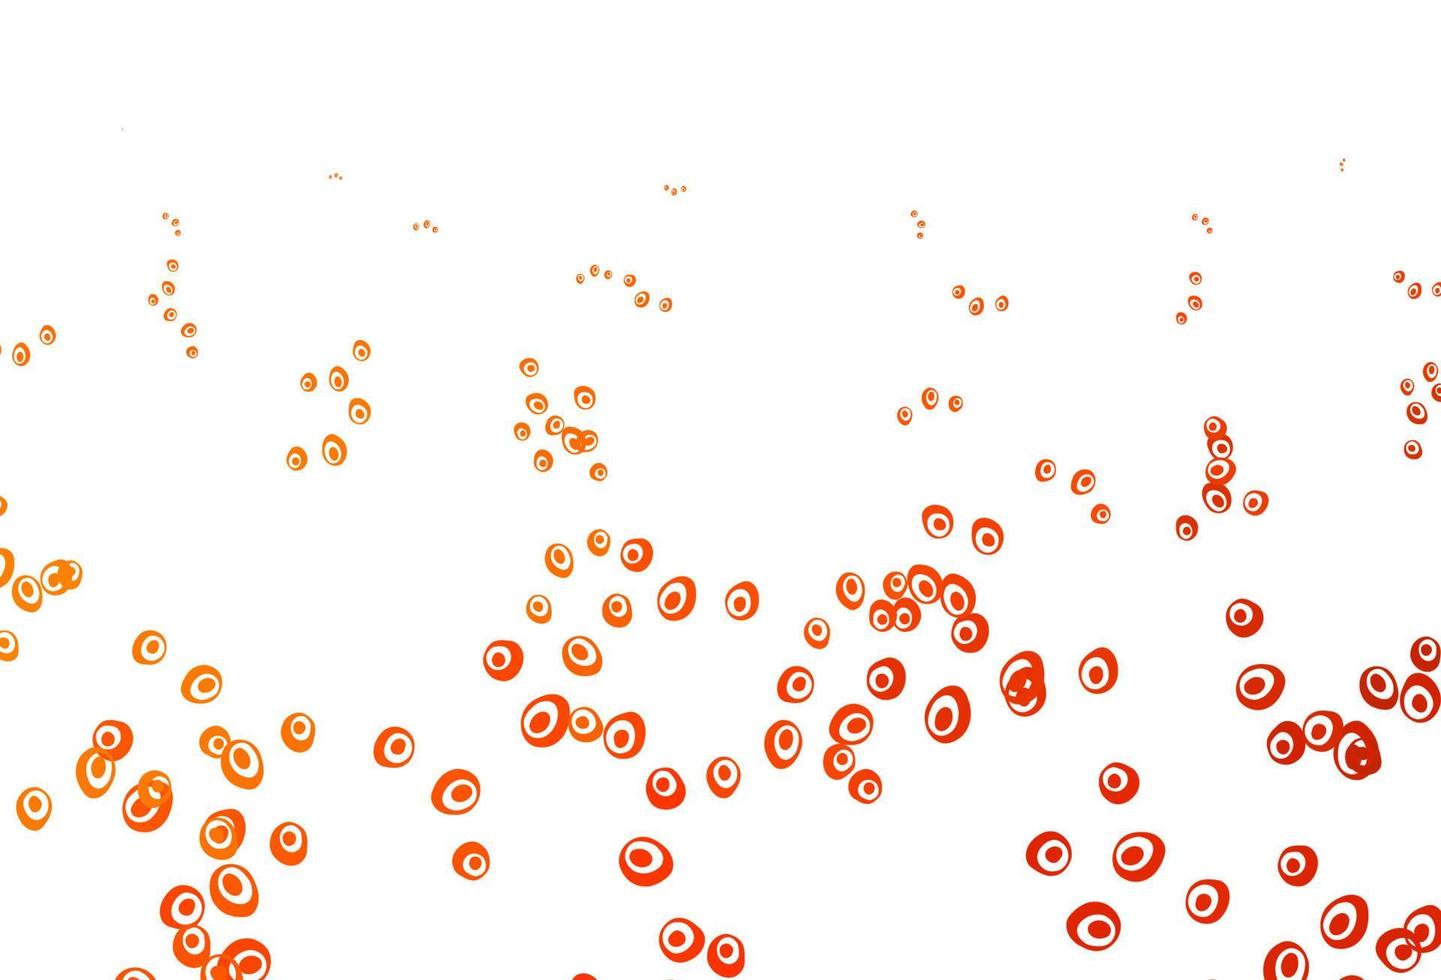 sfondo vettoriale arancione chiaro con bolle.